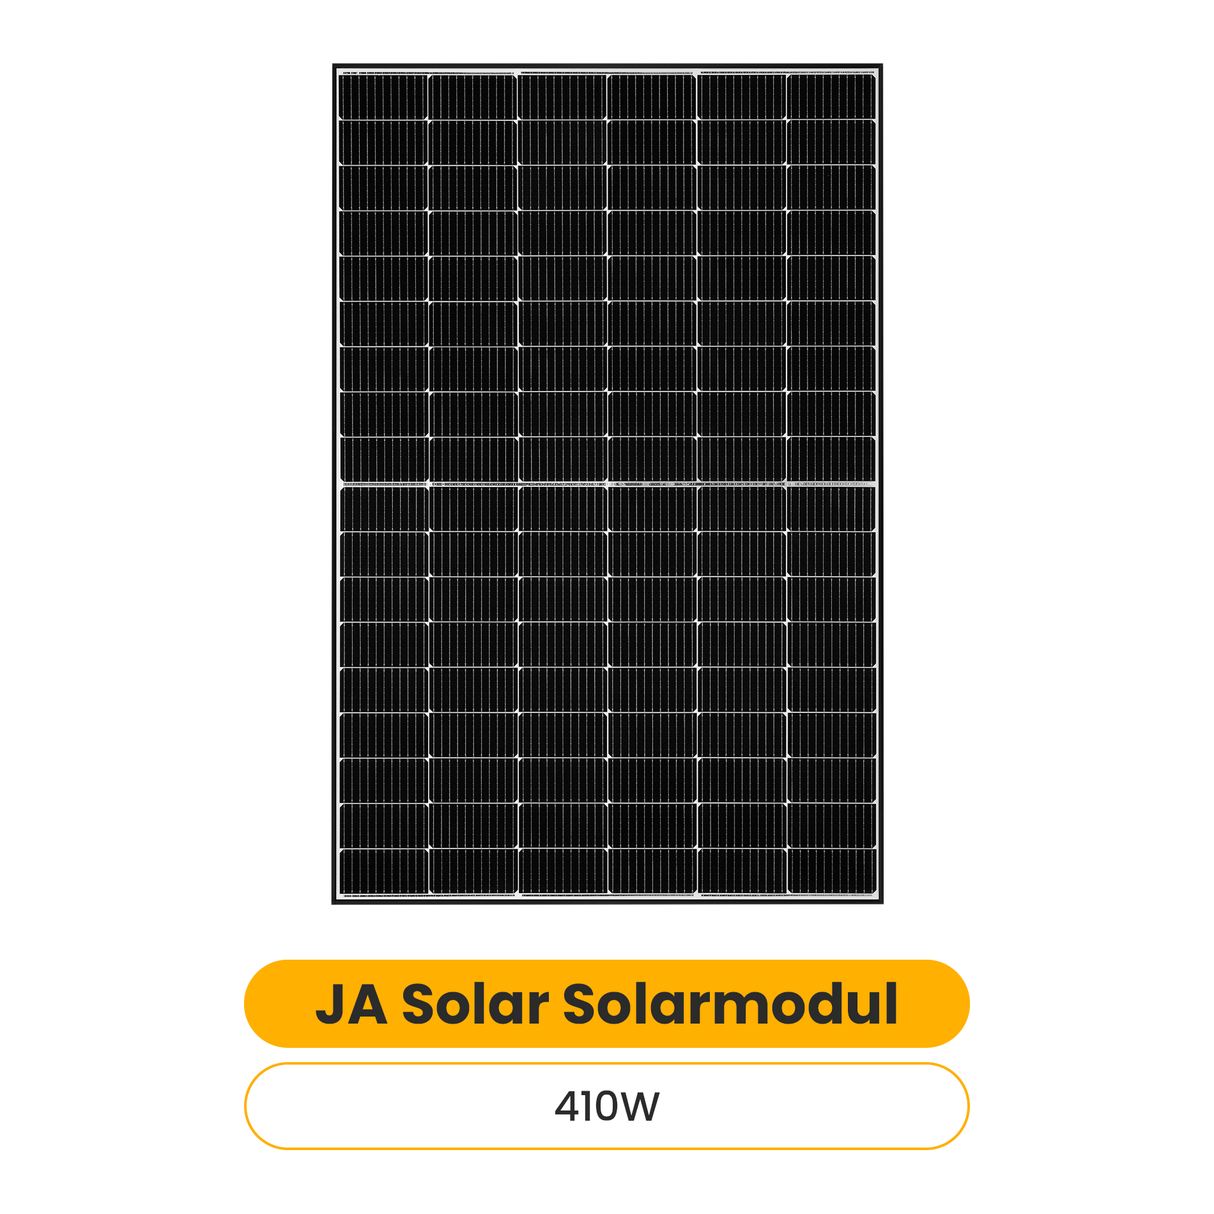 JA Solar Solarmodul JAM54S30 410W